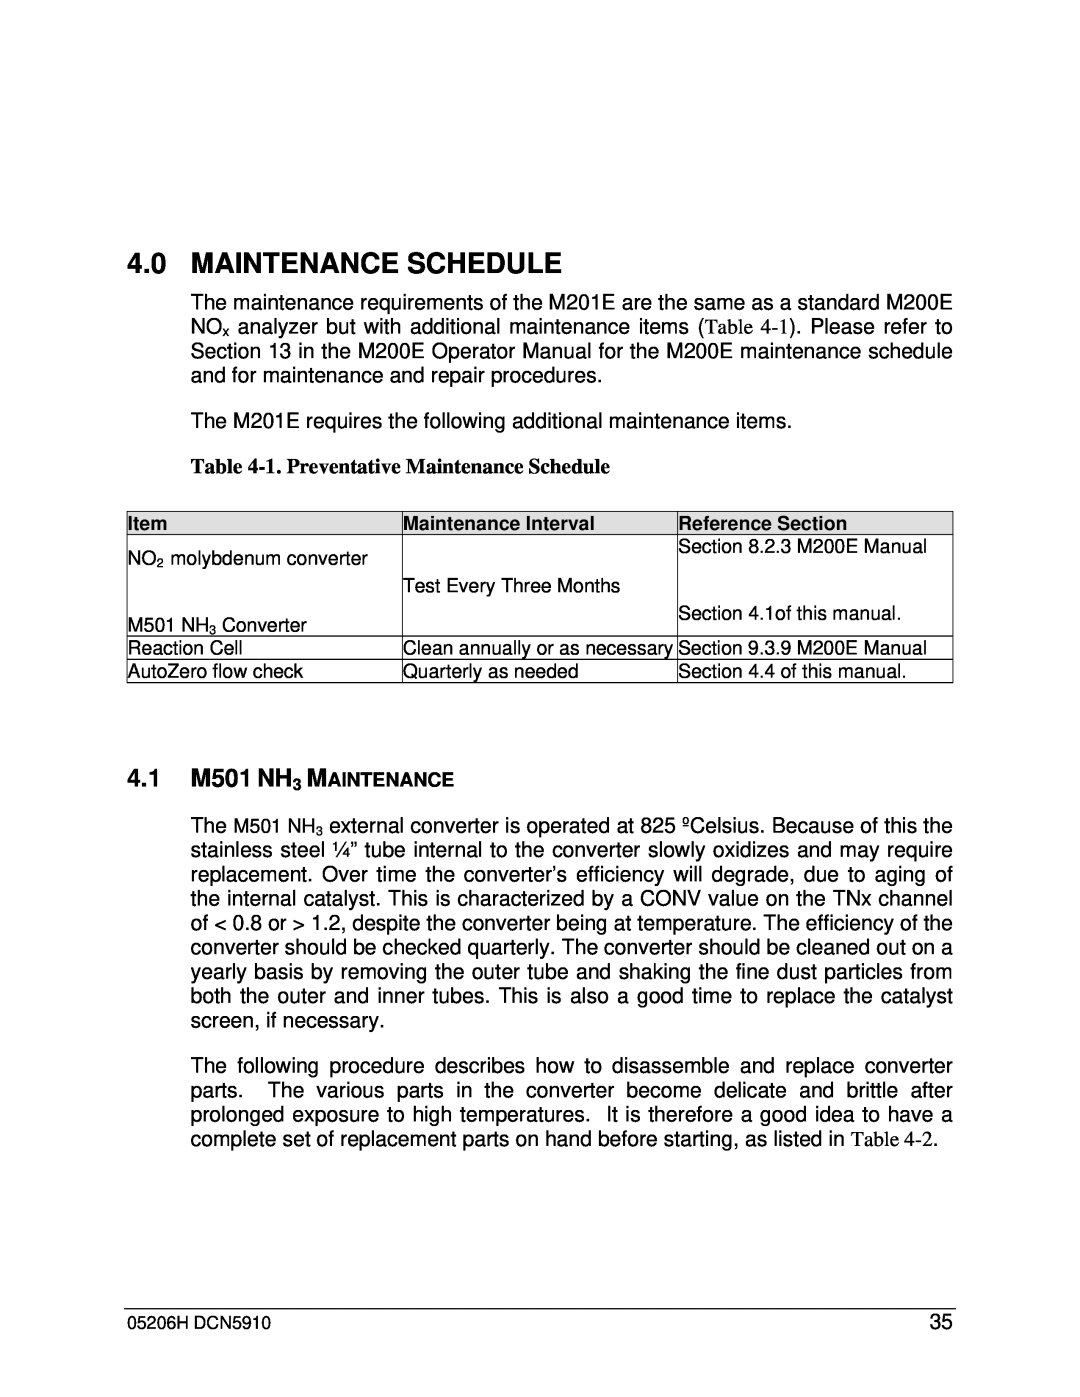 Teledyne M201E manual 1.Preventative Maintenance Schedule 